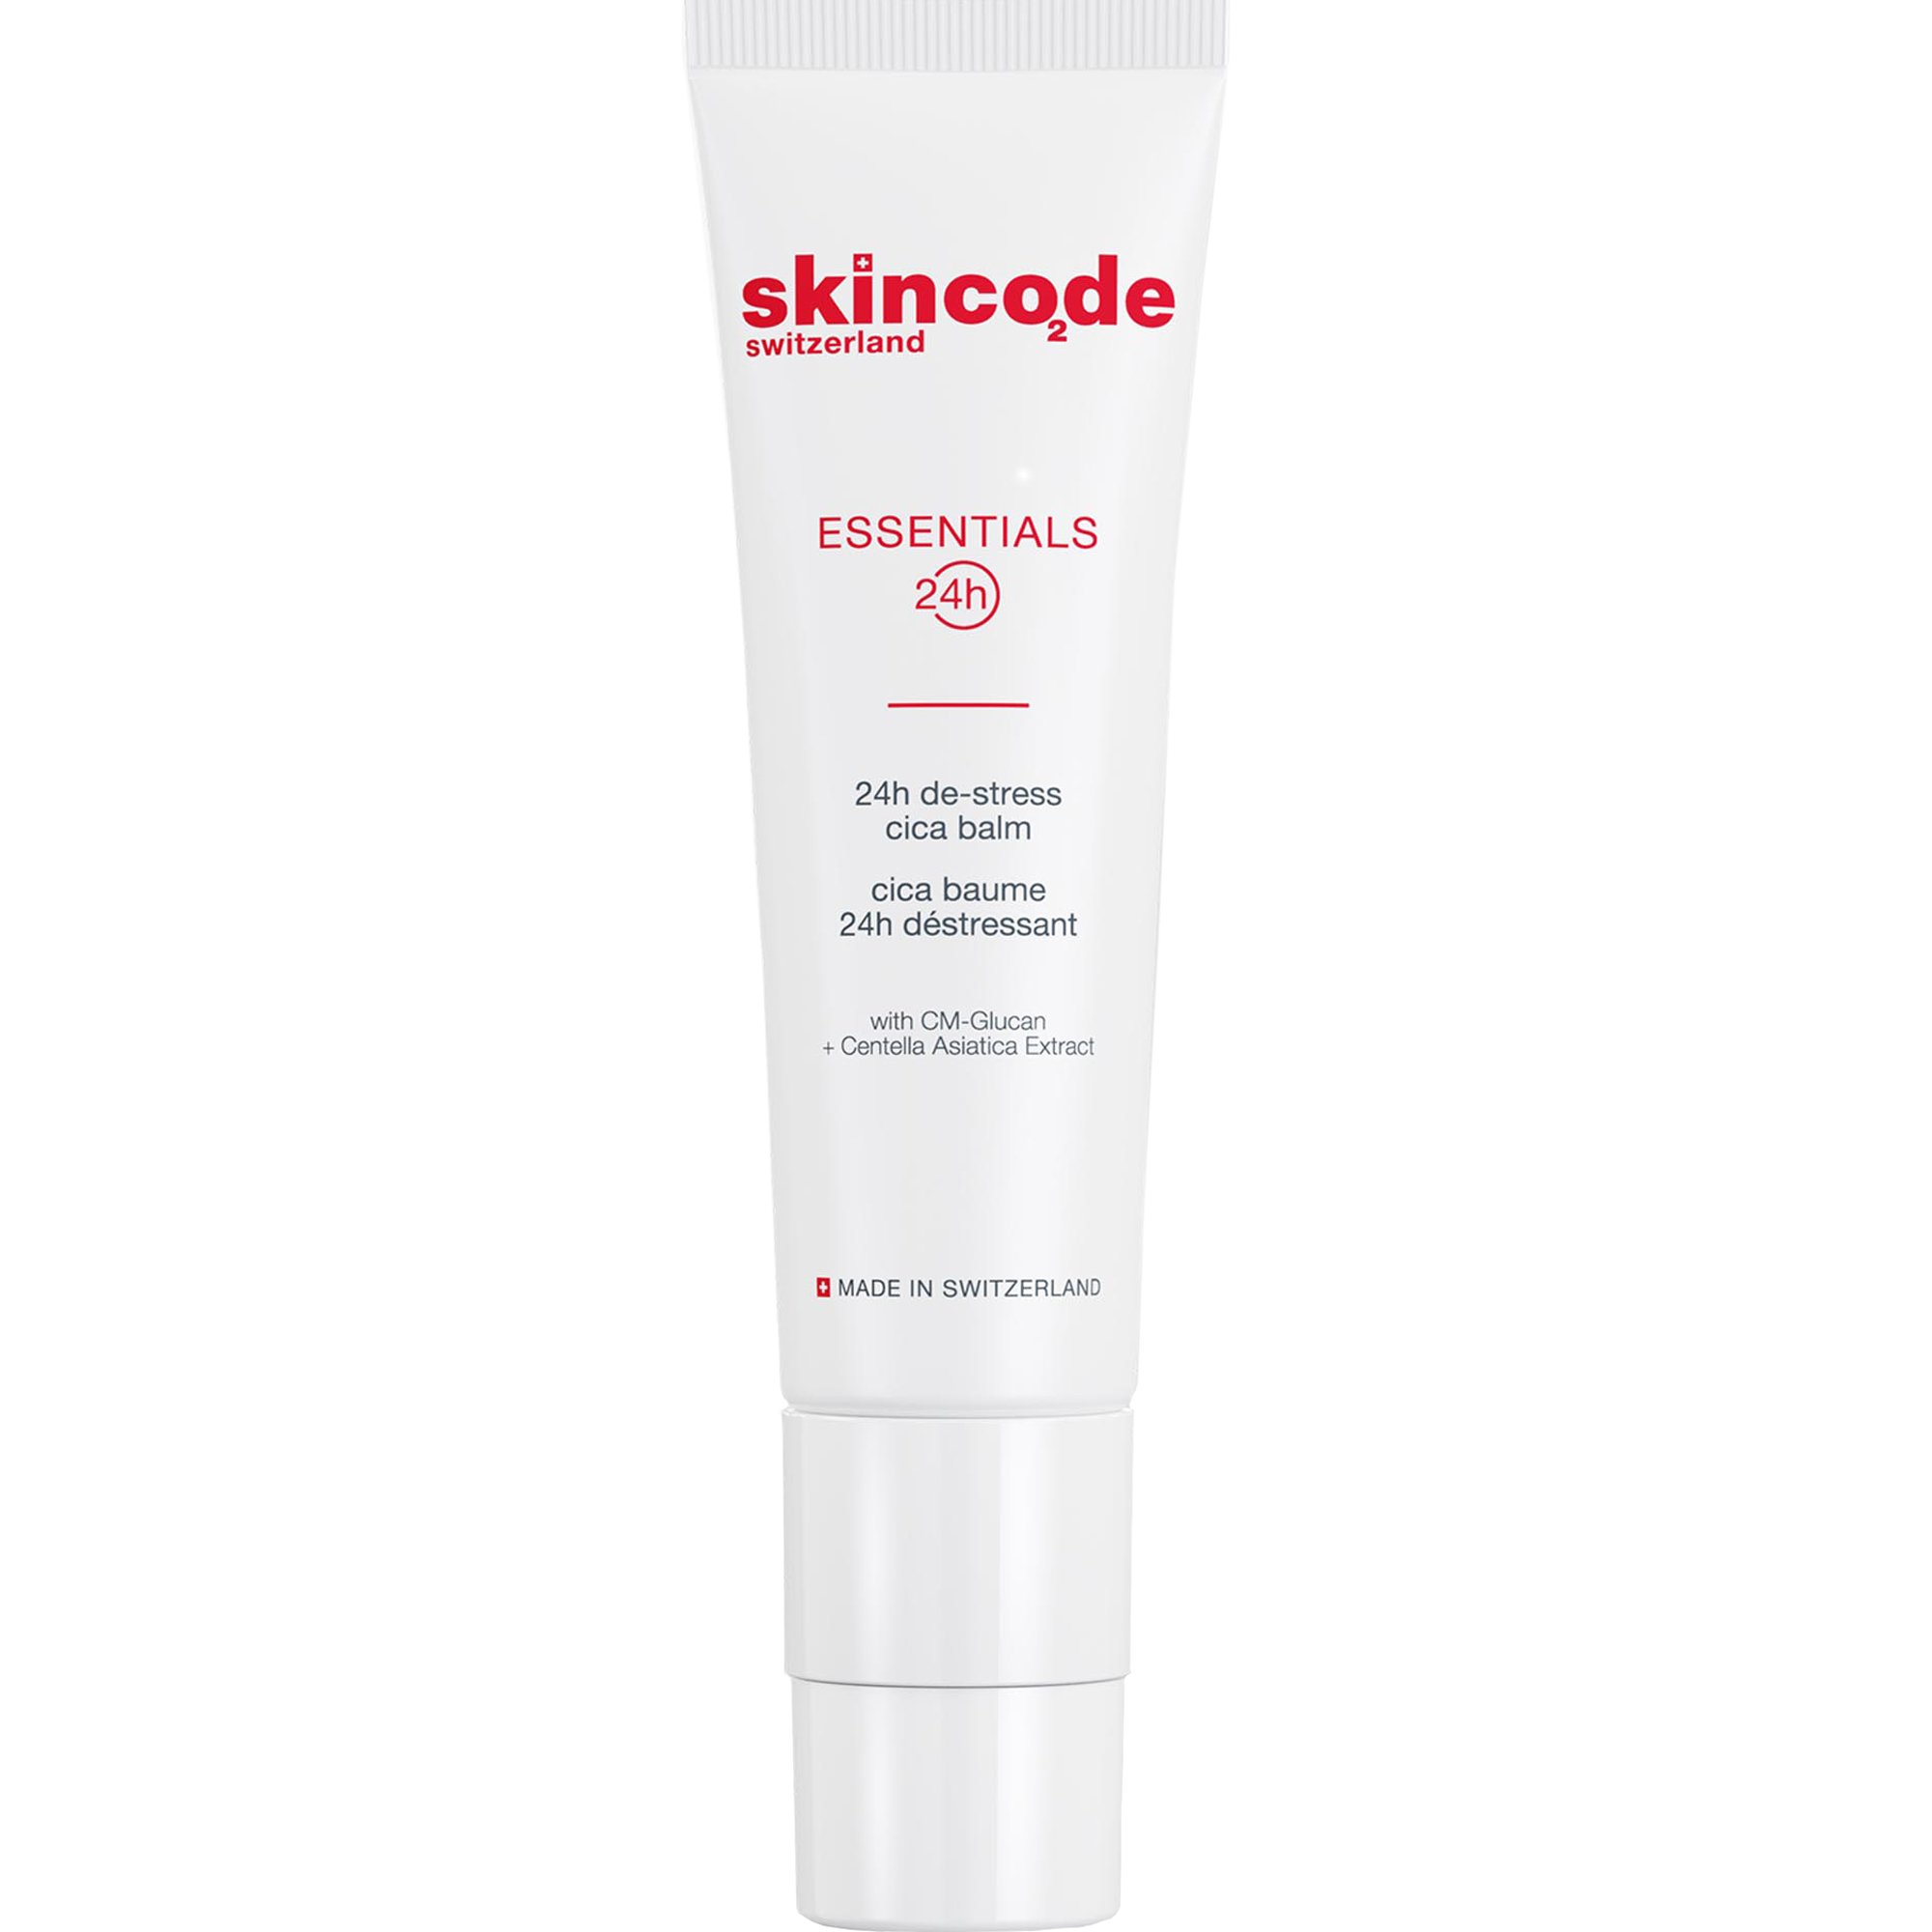 Skincode Essentials 24h De-Stress Cica Balm Ισχυρή Καταπραϋντική Κρέμα για την Εντατική Περιποίηση του Ξηρού, Αφυδατωμένου ή Ερεθισμένου Δέρματος 50ml